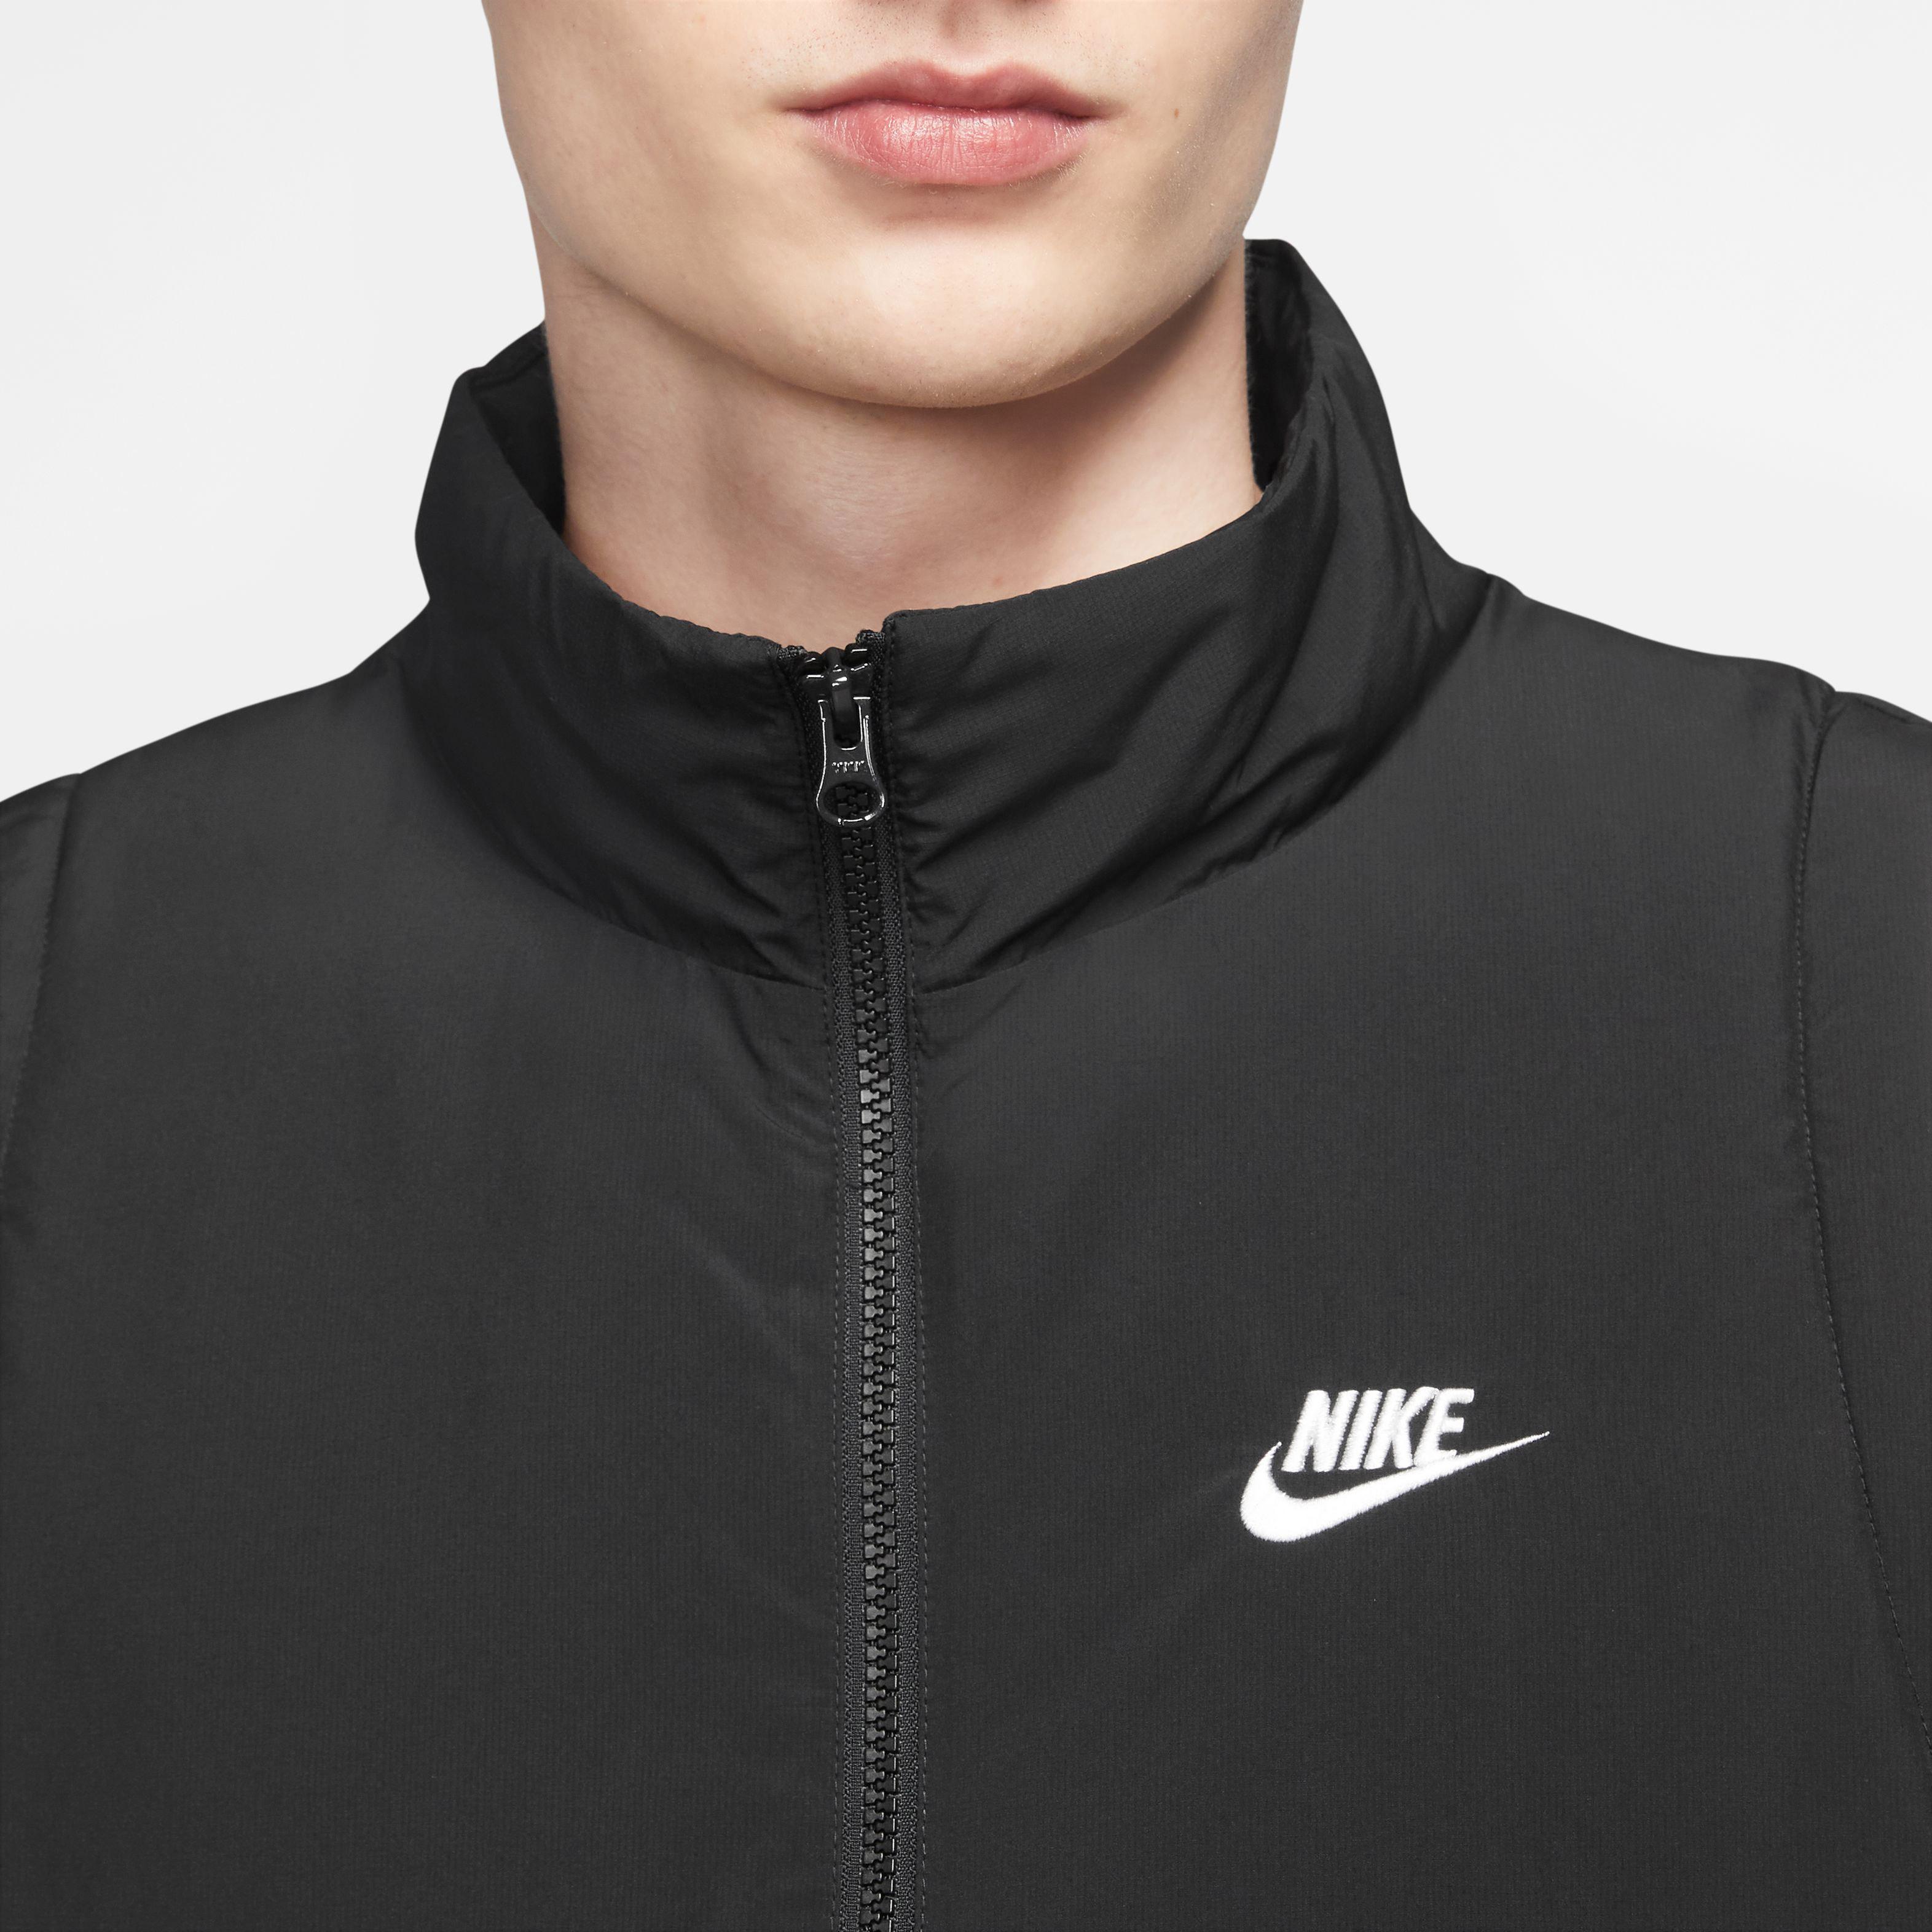 Herren Club von Nike kaufen im SportScheck Steppweste black-white Shop Online